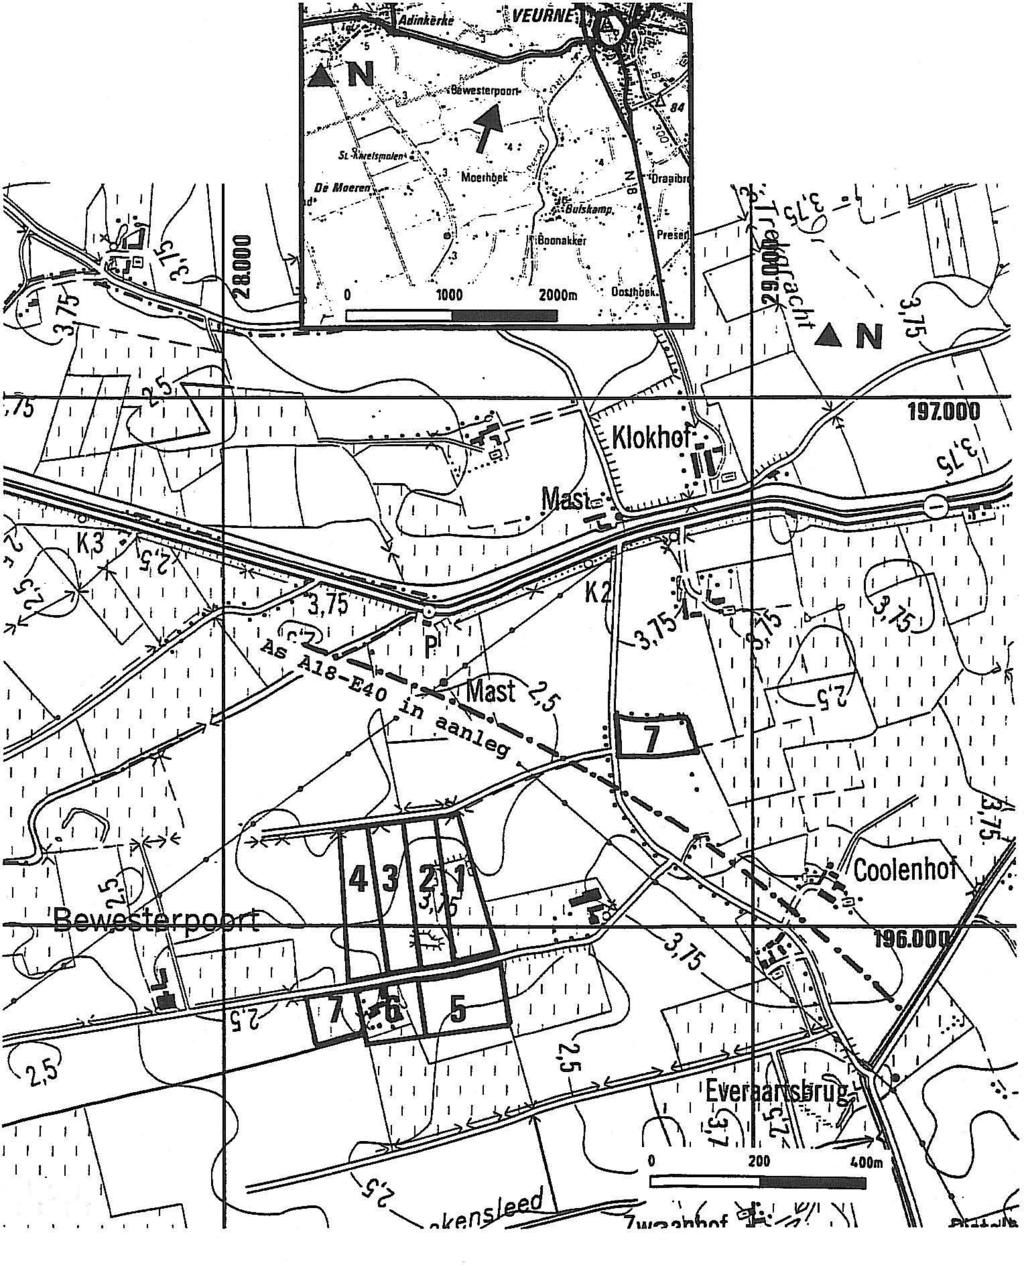 I I t I I I I I Fig. 1 Algemene ligging, lotindeling en topografie volgens de kaart van het N.G.I. op schaal 1110.000 editie 1978.